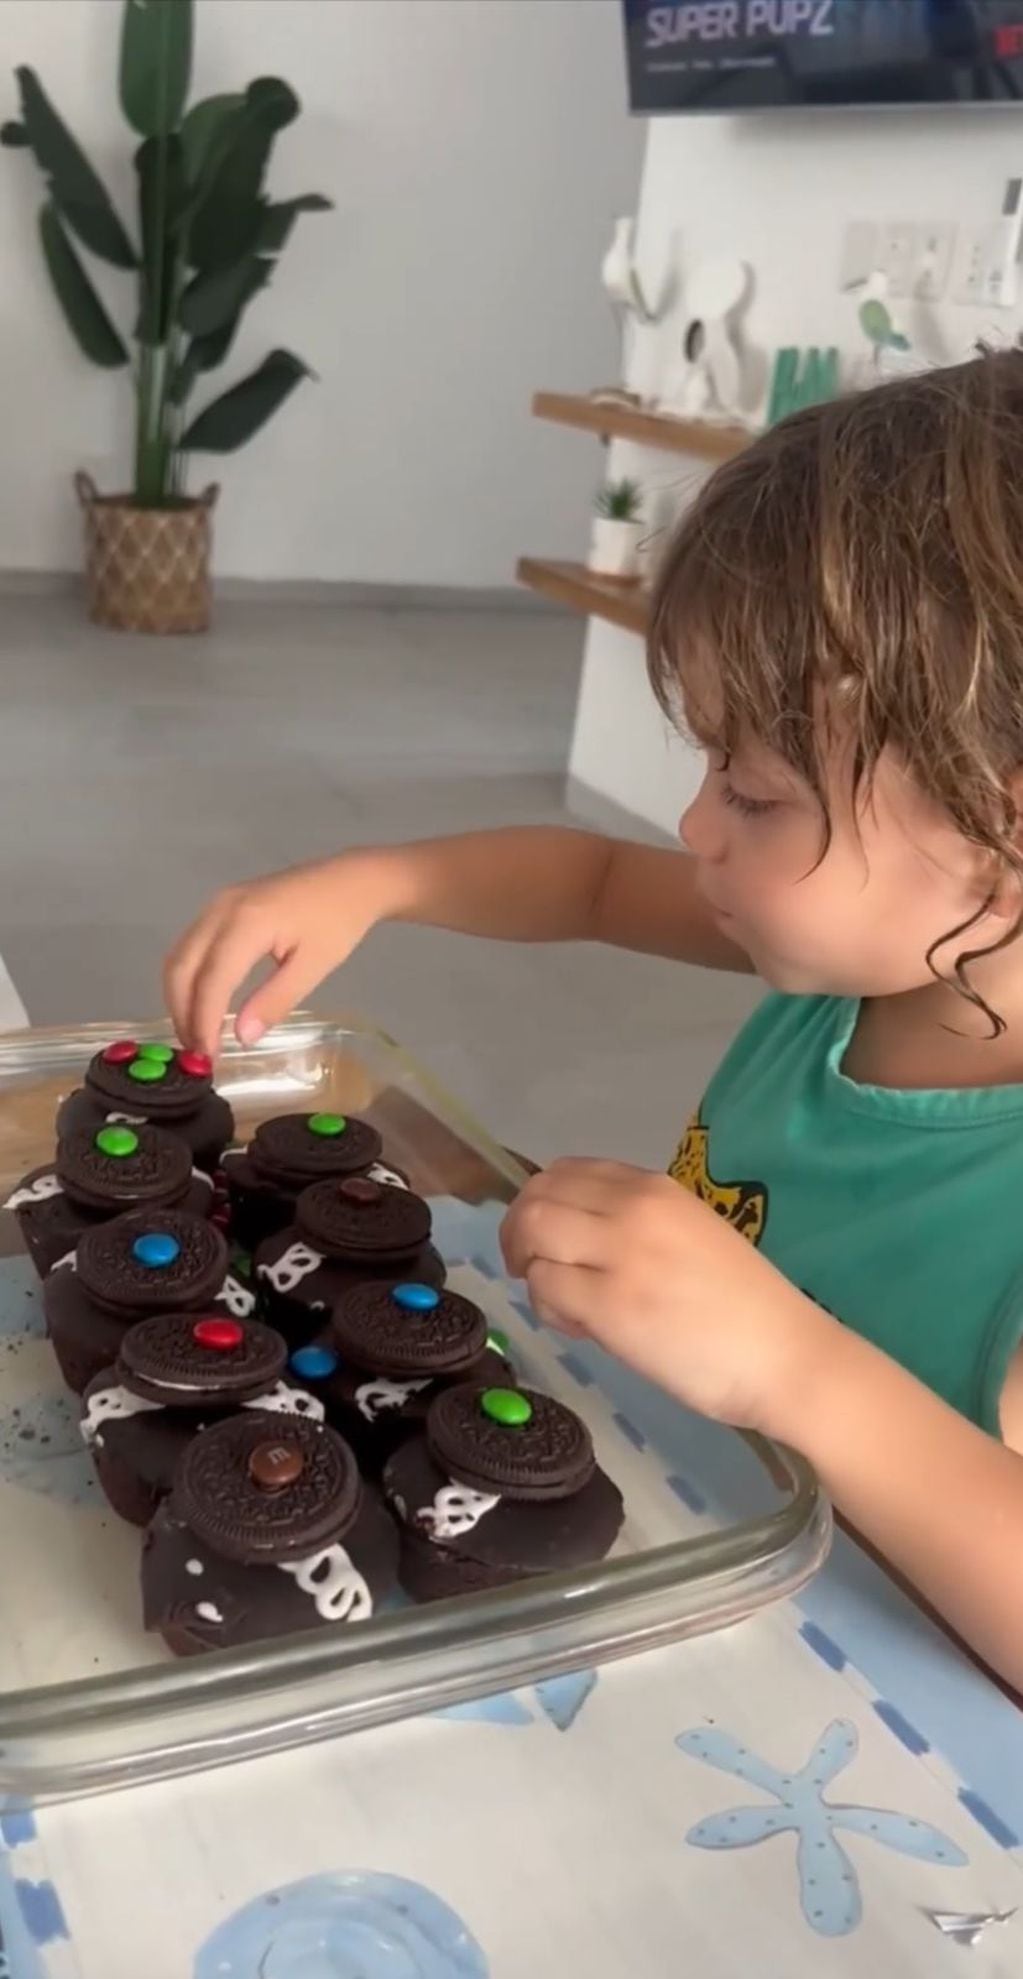 Florencia Peña no consiguió un torta de cumpleaños en México para su hijo. Captura del video.